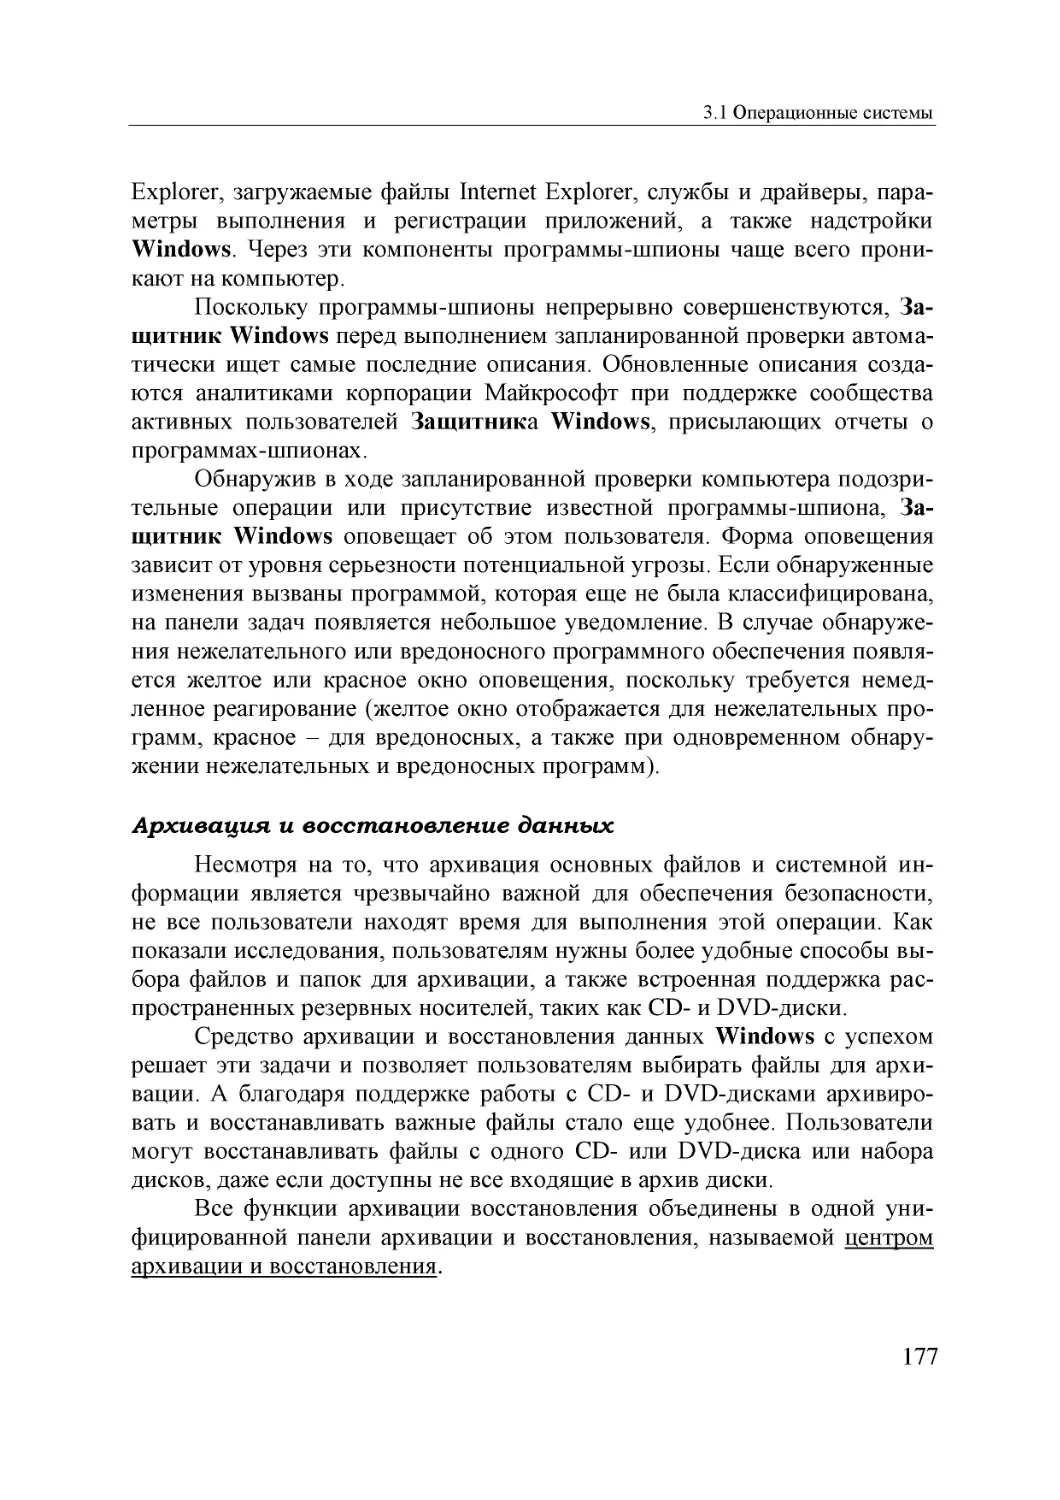 Informatika_Uchebnik_dlya_vuzov_2010 177